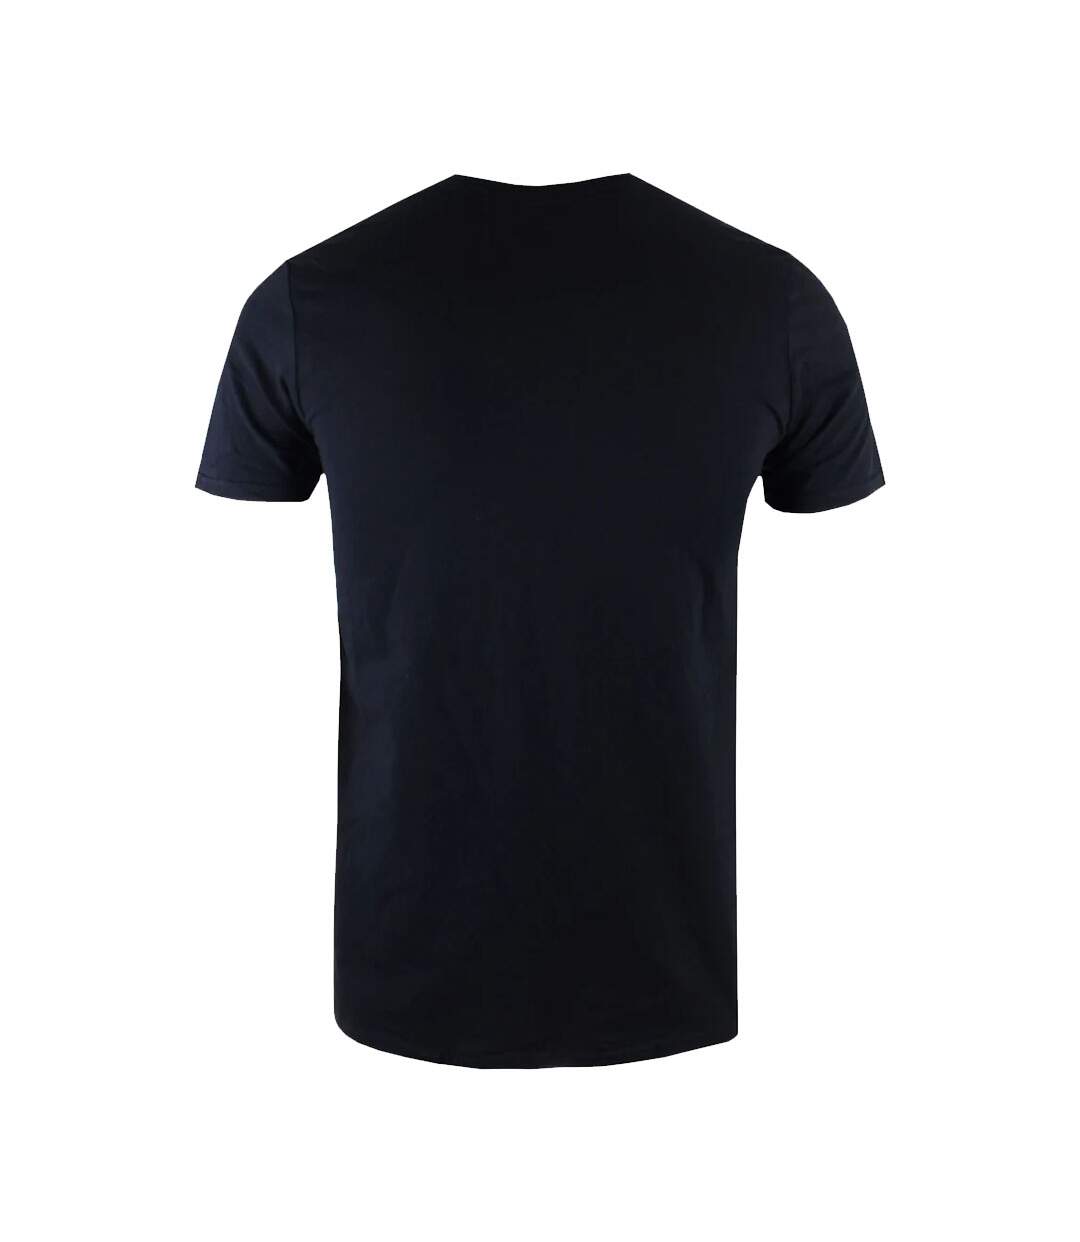 Batman T-shirt en coton surpiqué pour hommes (Noir) - UTTV490